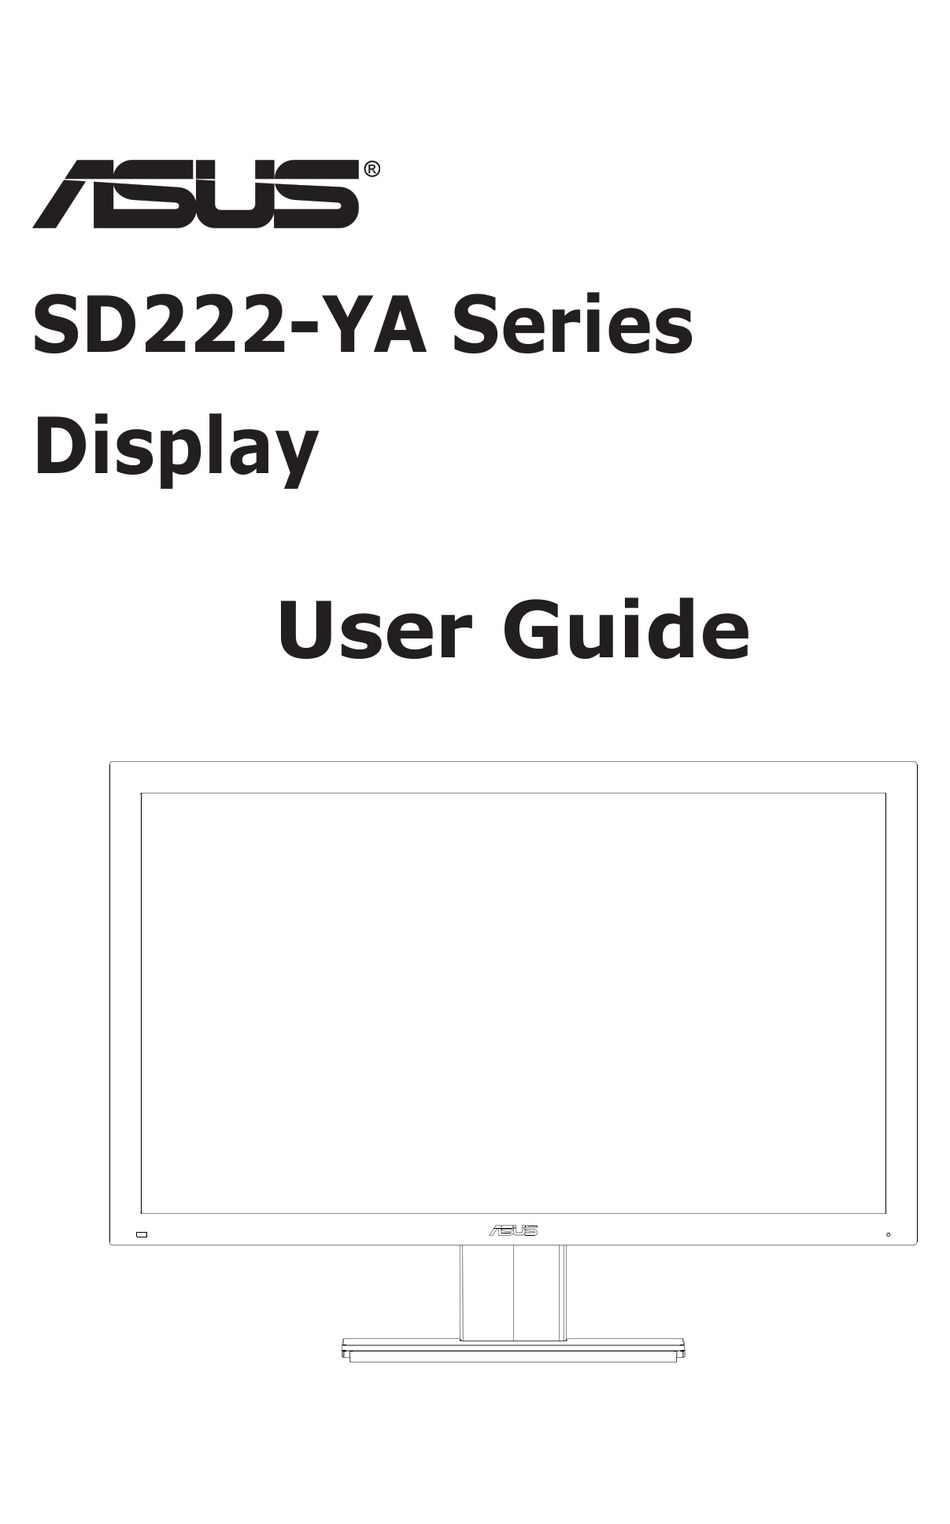 ASUS SD222-YA SERIES USER MANUAL Pdf Download | ManualsLib